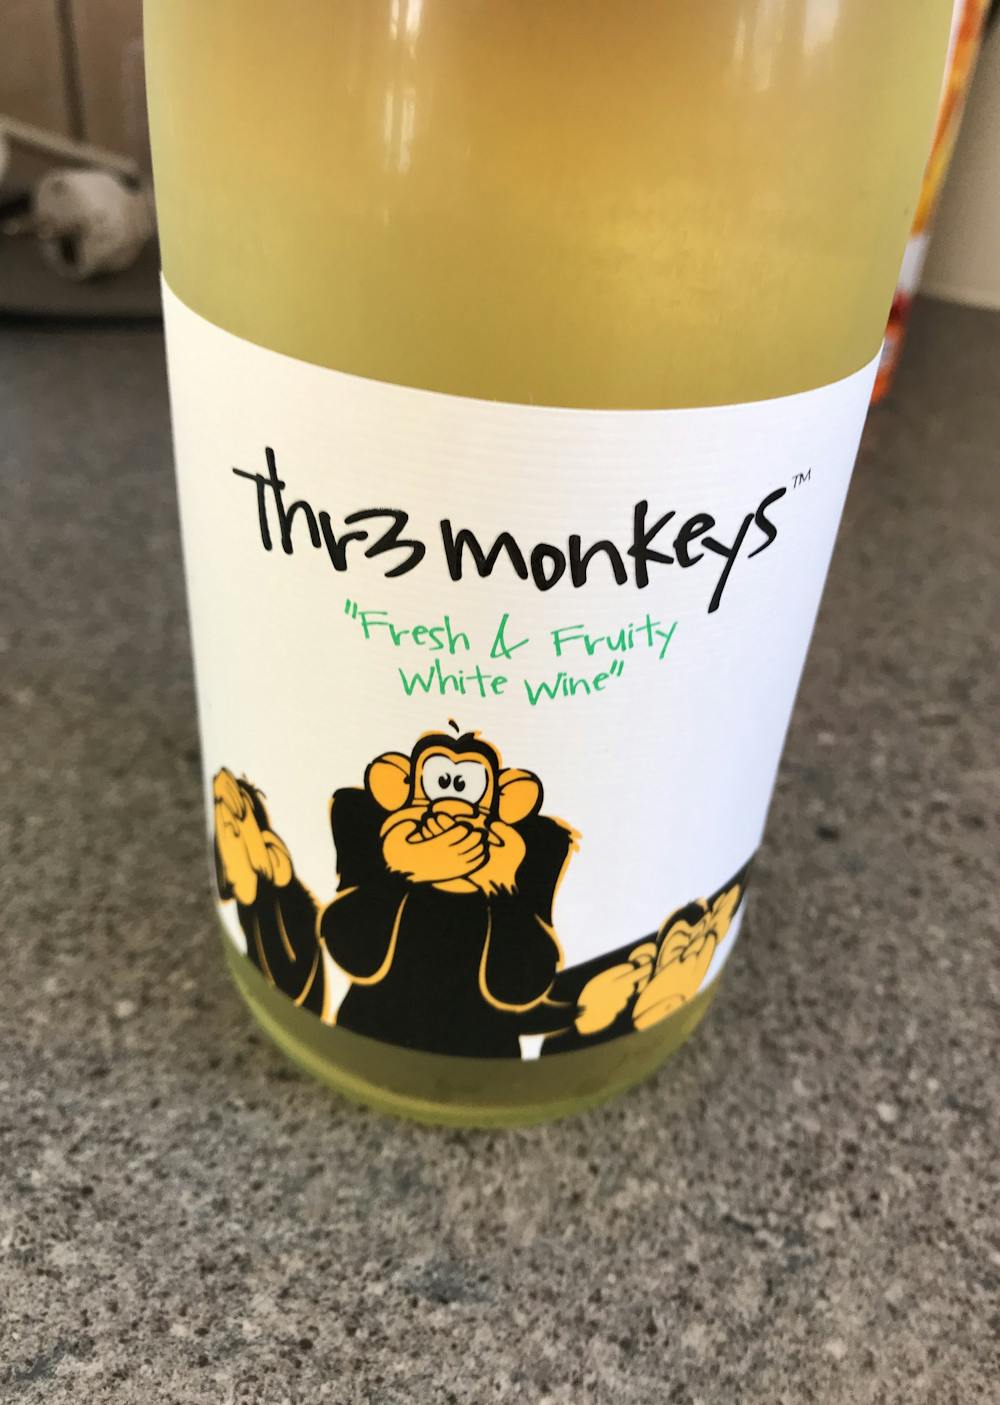 Thr3 monkeys